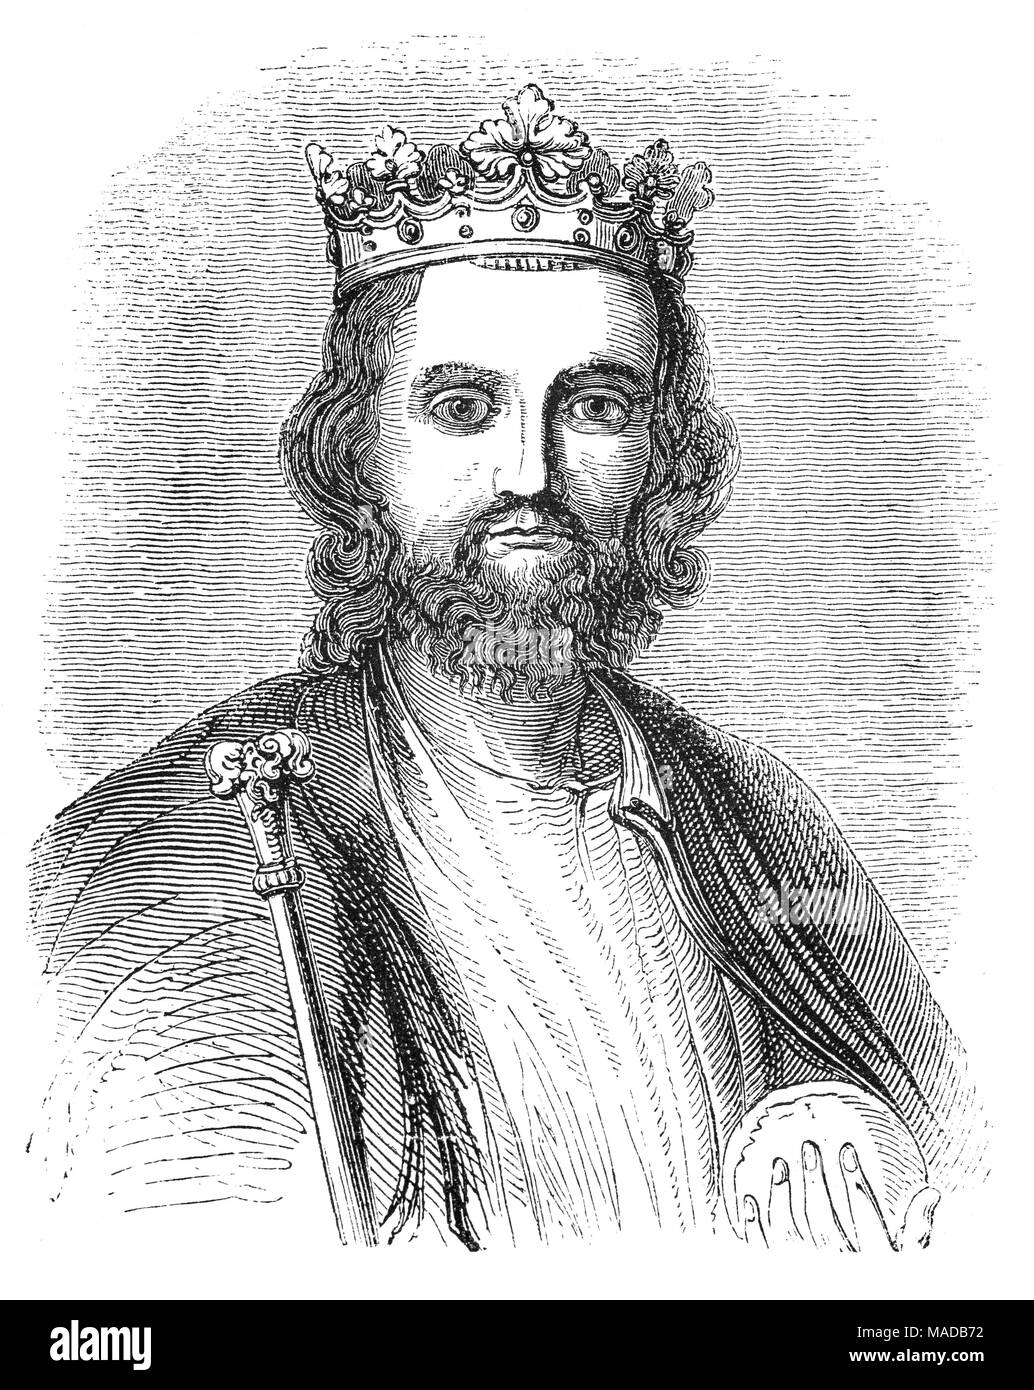 Le roi Édouard II (1284 - 1327), alias Edward de Carnarvon, était roi d'Angleterre à partir de 1307 jusqu'en janvier 1327 déchu. Le quatrième fils d'Édouard I, Edward est devenu l'héritier au trône après la mort de son frère aîné Alphonso. Début en 1300, Edward accompagne son père sur des campagnes pour pacifier l'Écosse. Il accéda au trône en 1307, à la suite du décès de son père. En 1308, il épouse Isabelle de France, fille du puissant roi Philippe IV, dans le cadre d'un effort en cours pour résoudre les tensions entre les couronnes anglaise et française. Banque D'Images